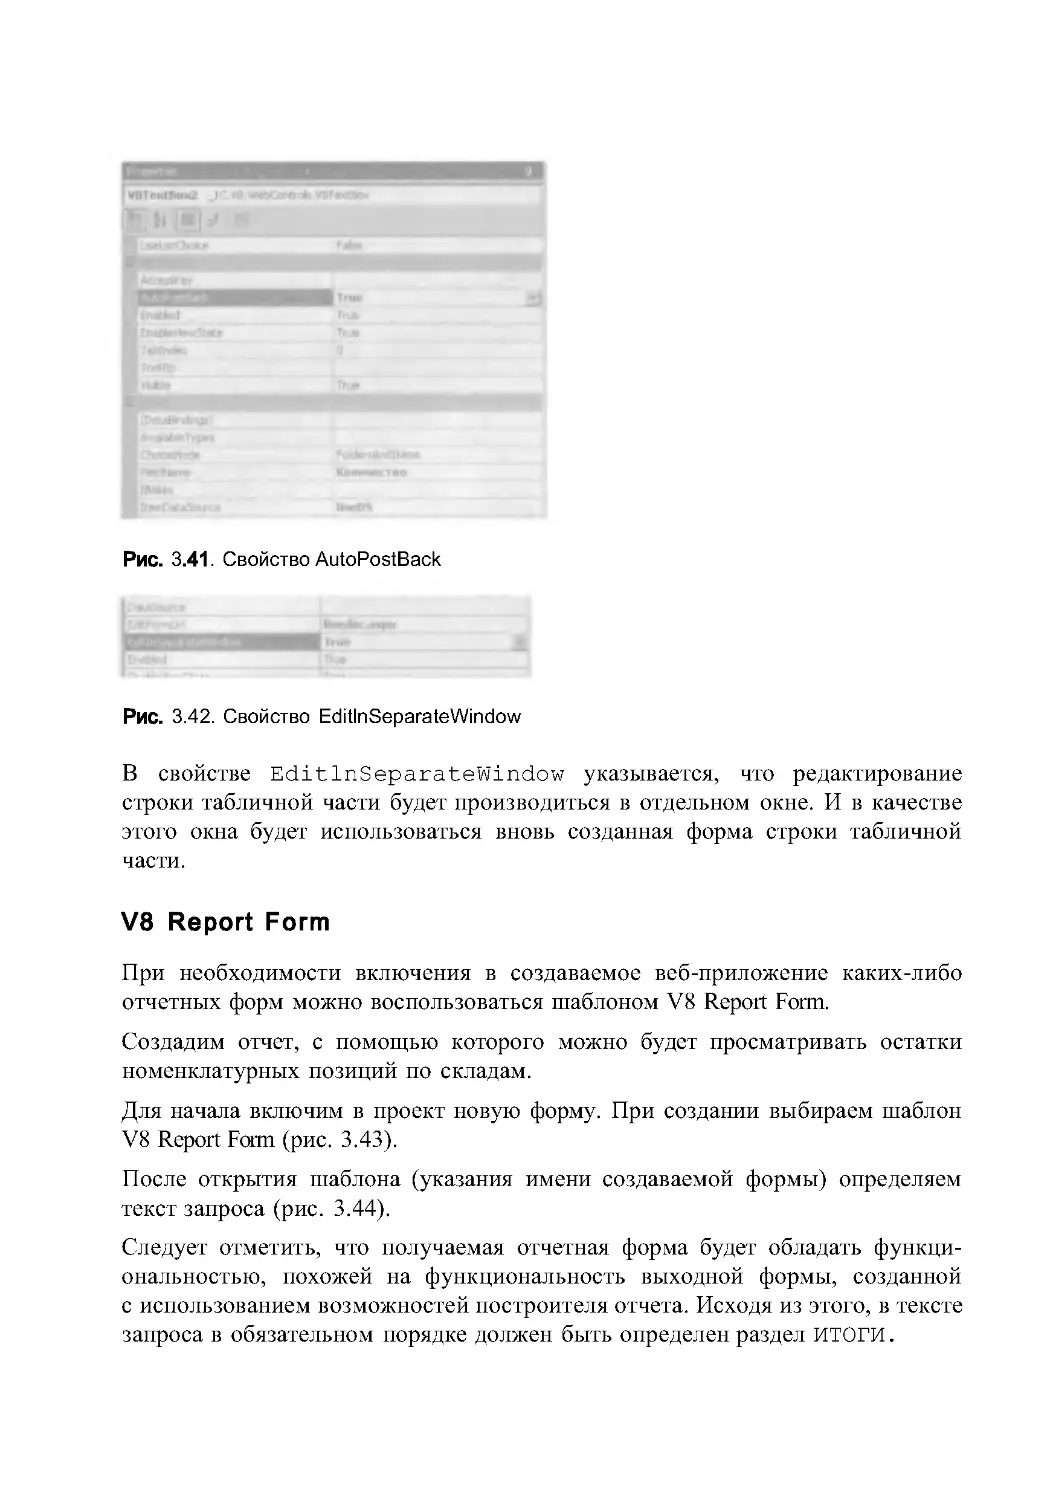 V8 Report Form